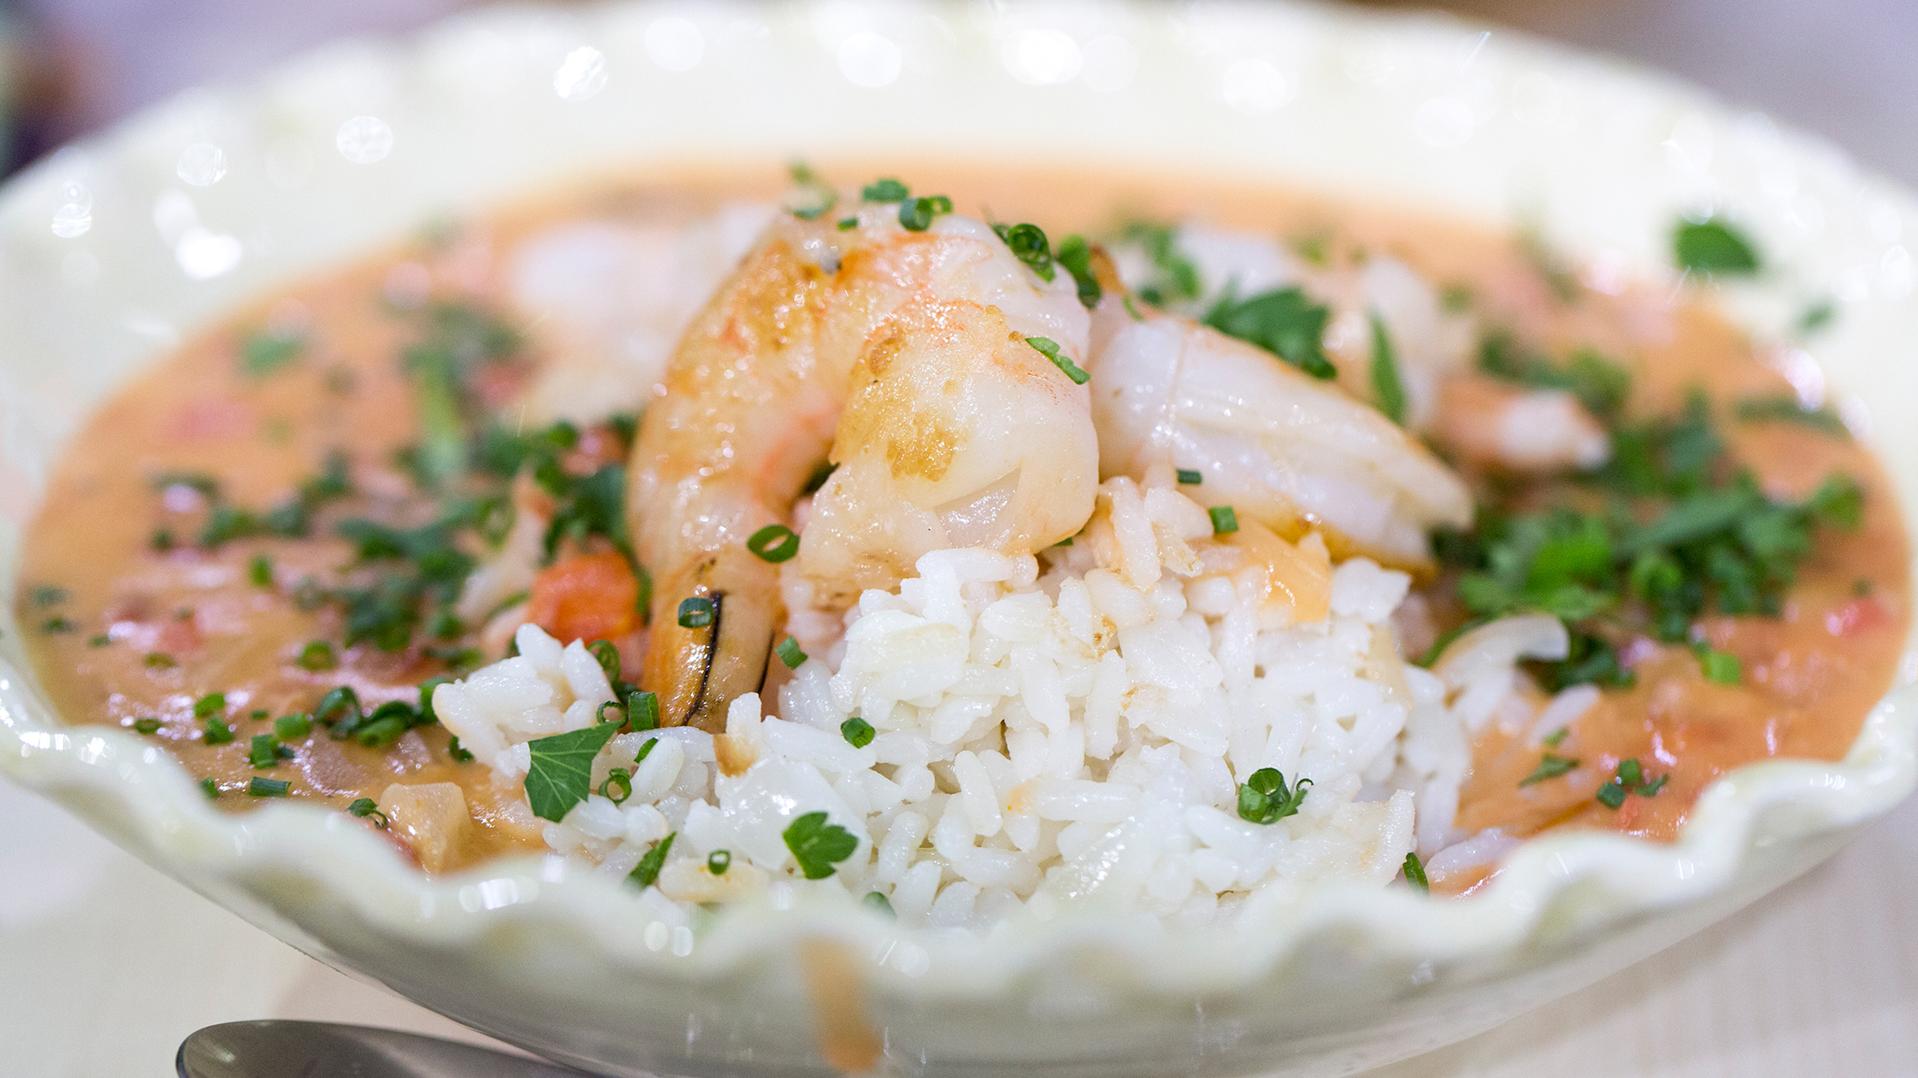  Creamy prawn and cassava stew, a delicious Brazilian recipe! 🍤🍴